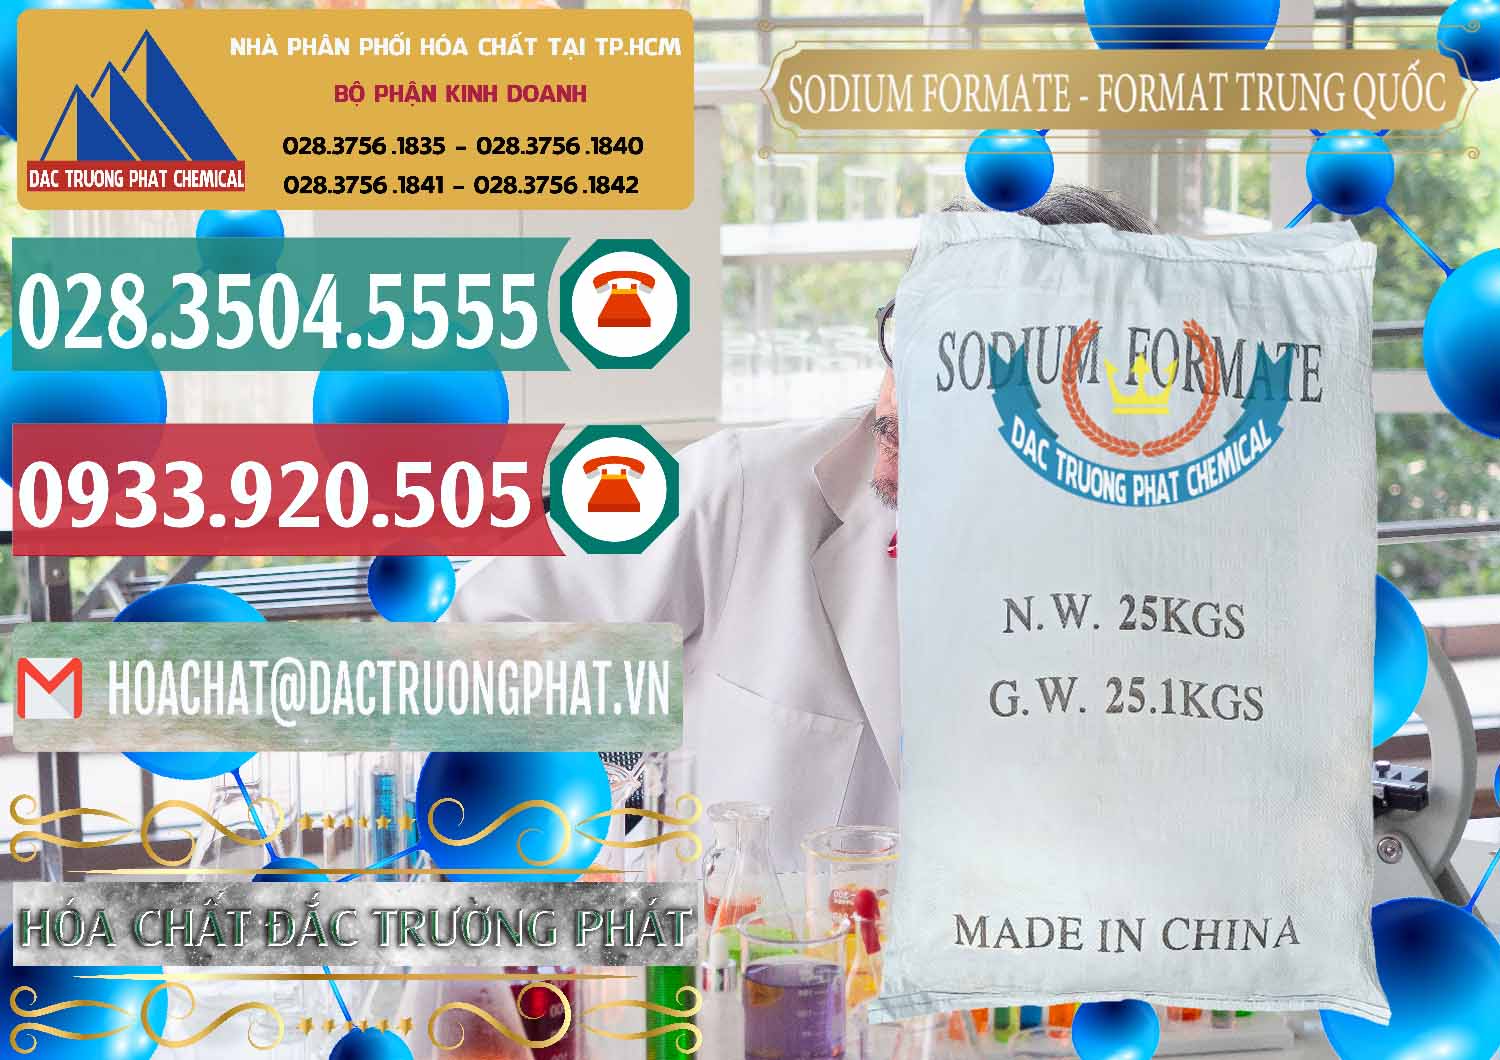 Đơn vị chuyên bán & cung ứng Sodium Formate - Natri Format Trung Quốc China - 0142 - Chuyên kinh doanh _ cung cấp hóa chất tại TP.HCM - muabanhoachat.vn